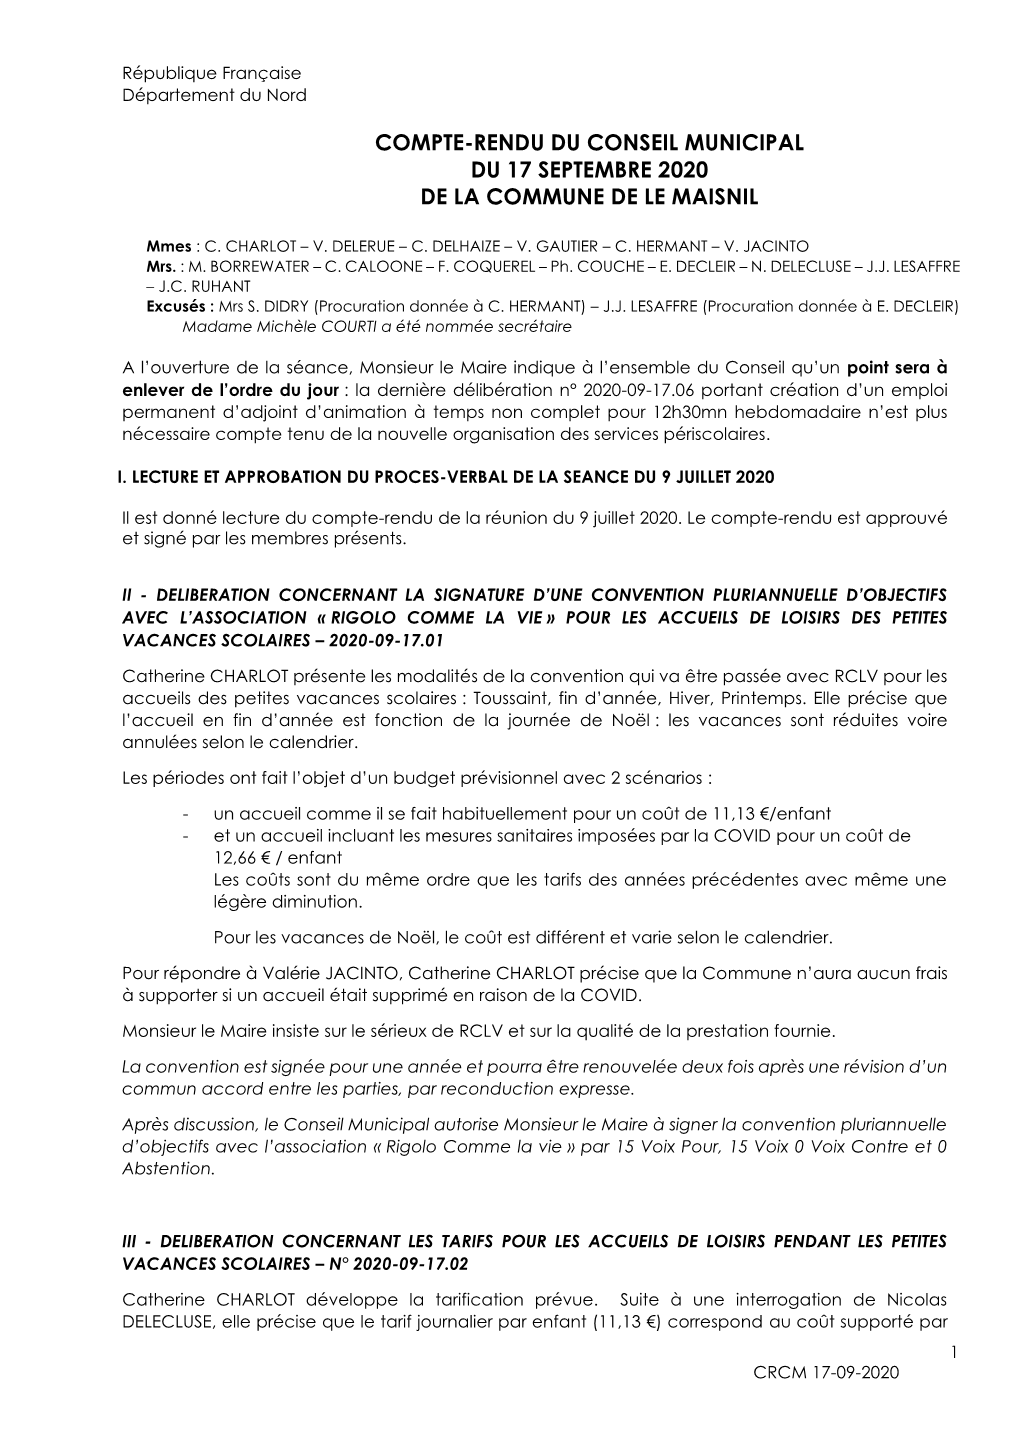 Compte-Rendu Du Conseil Municipal Du 17 Septembre 2020 De La Commune De Le Maisnil